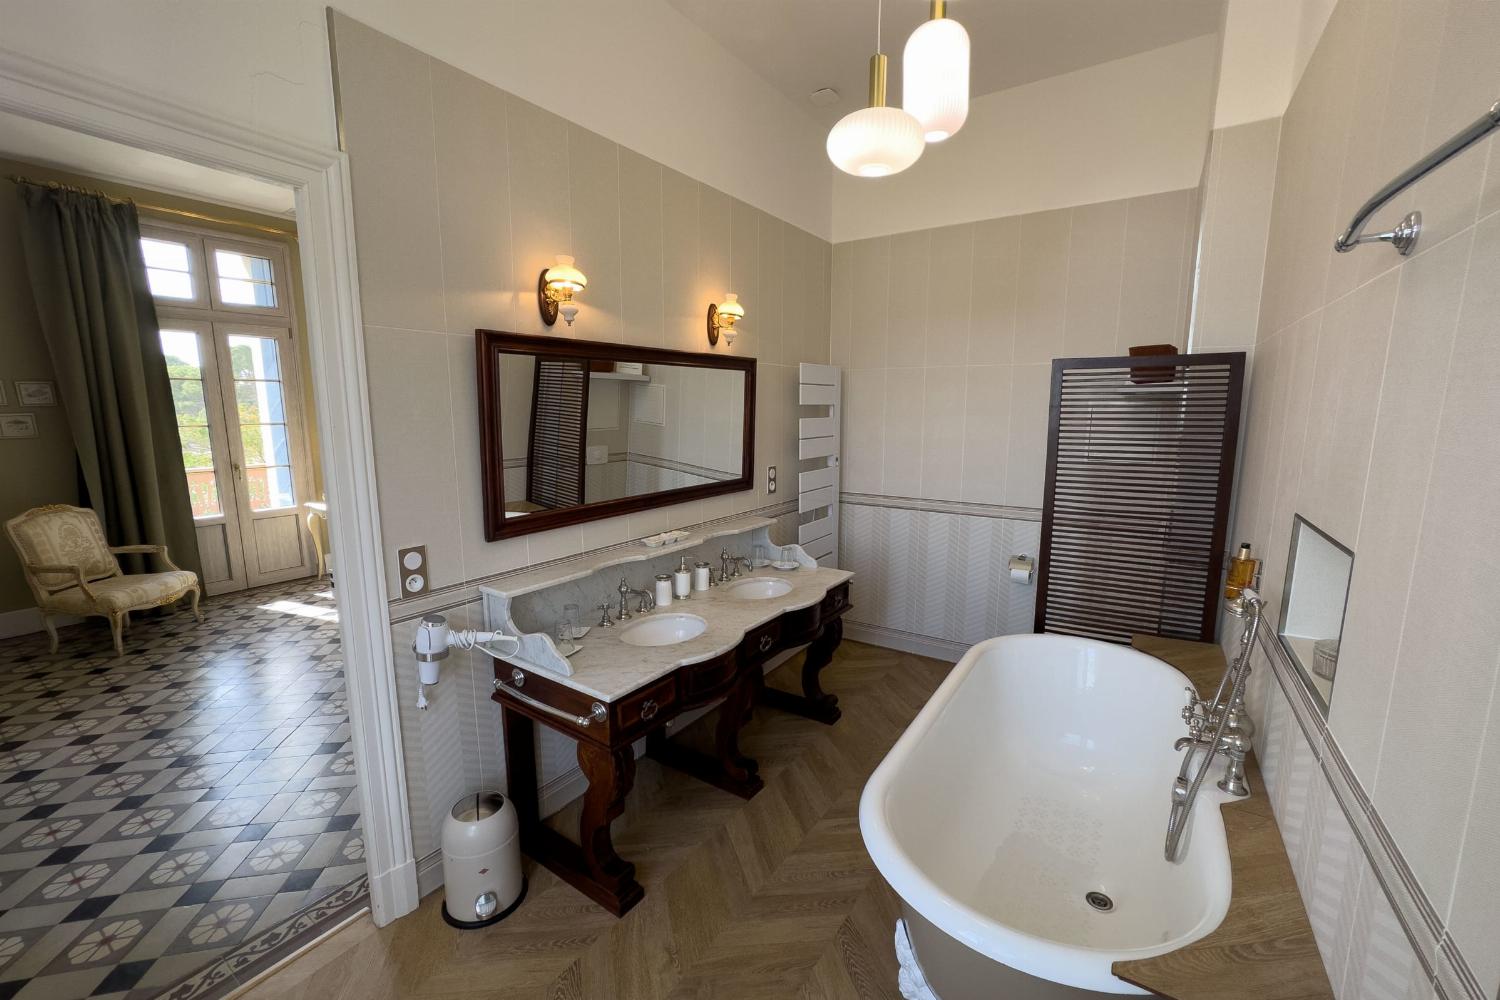 Salle de bain | Château de vacances dans le sud de la France